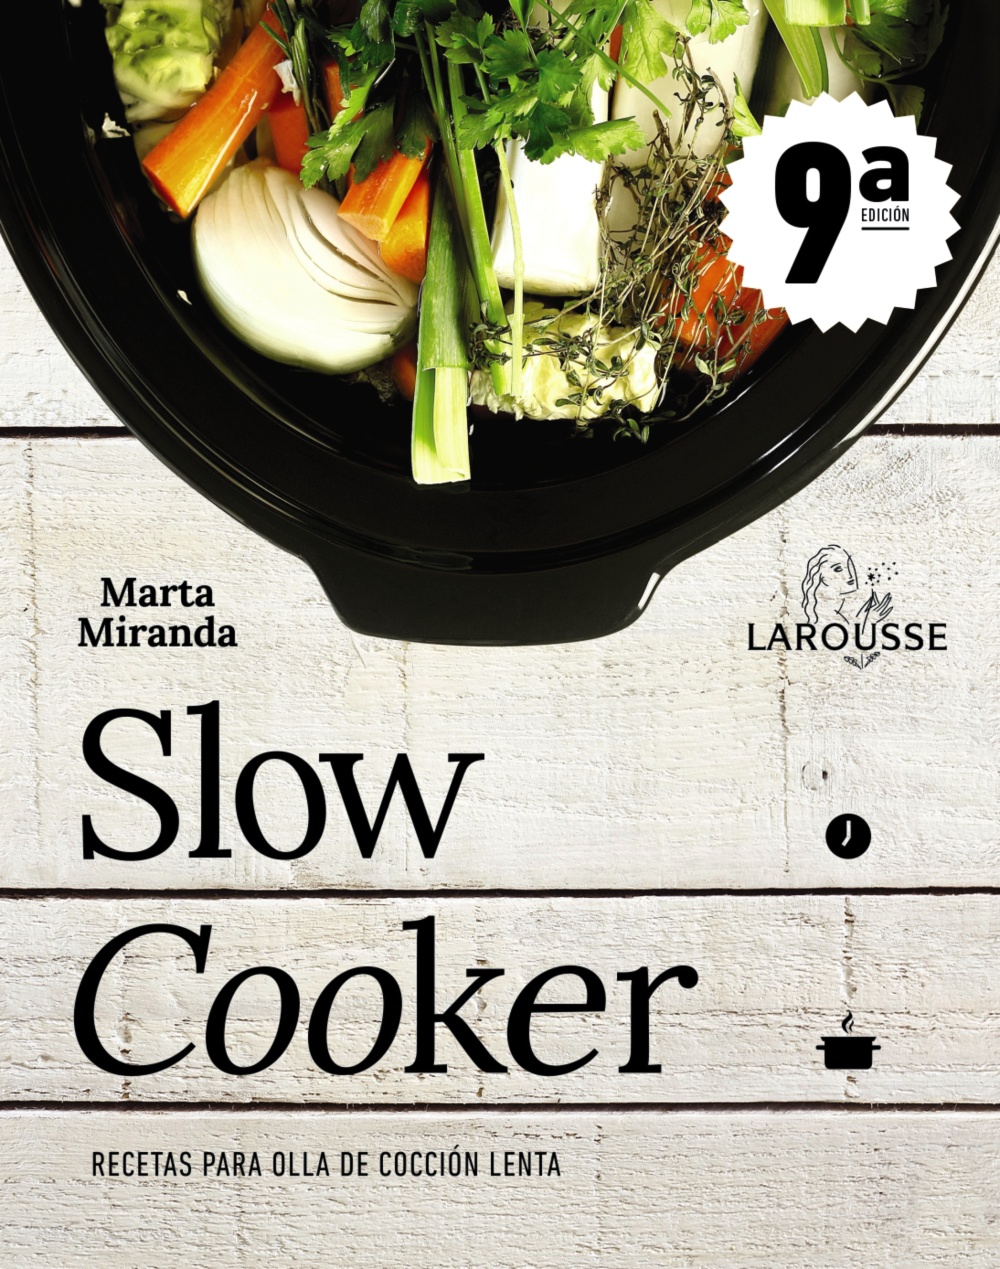 Slow cooker. Recetas para olla de cocción lenta - Larousse Editorial